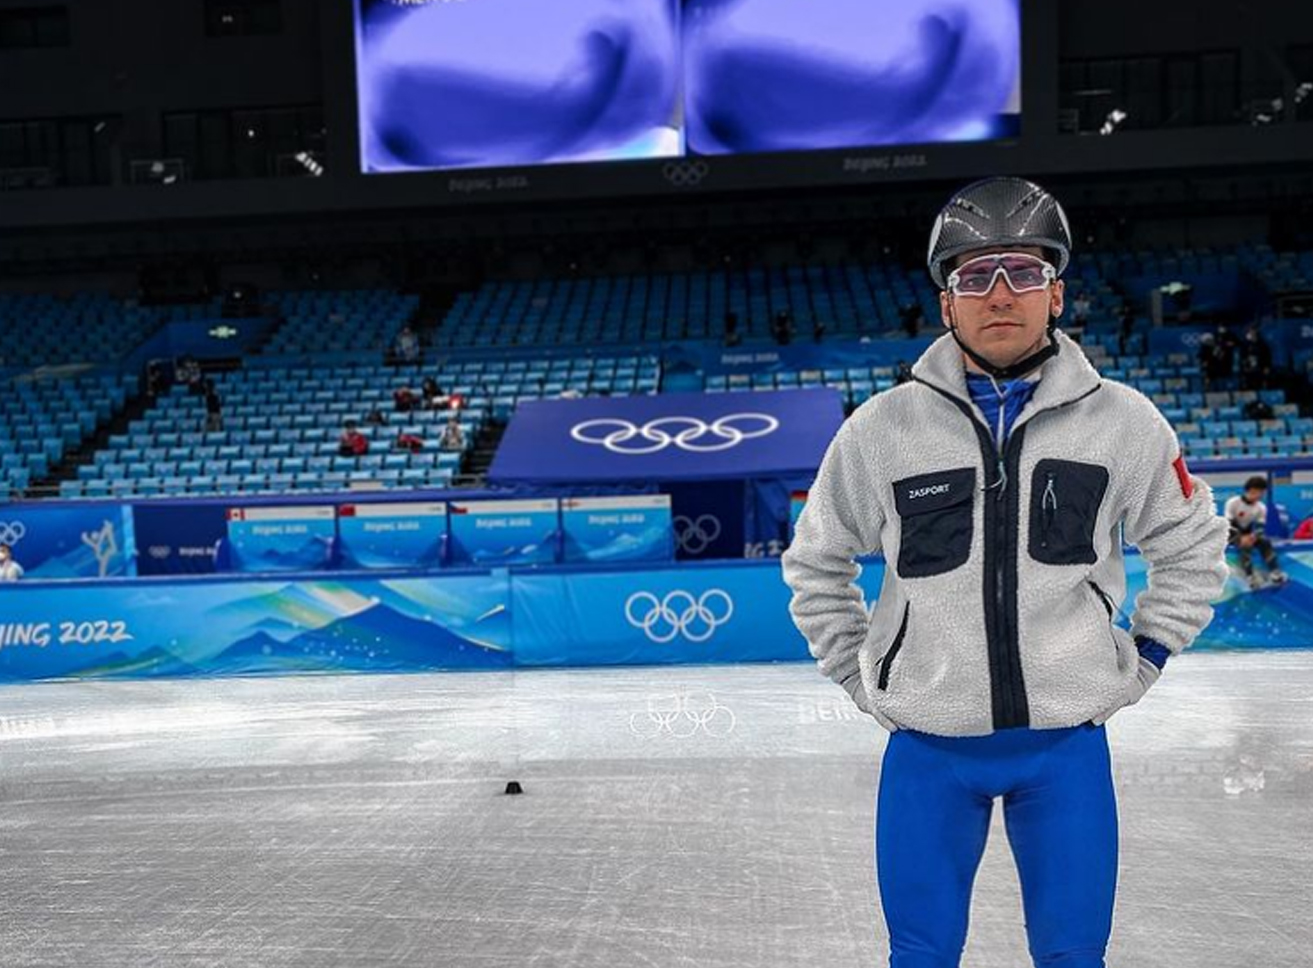 Денис Айрапетян: «Перед стартом я вспоминаю всю свою подготовку и весь путь, который я прошел, для того чтобы хотя бы попасть на Олимпийские игры и выступать здесь»